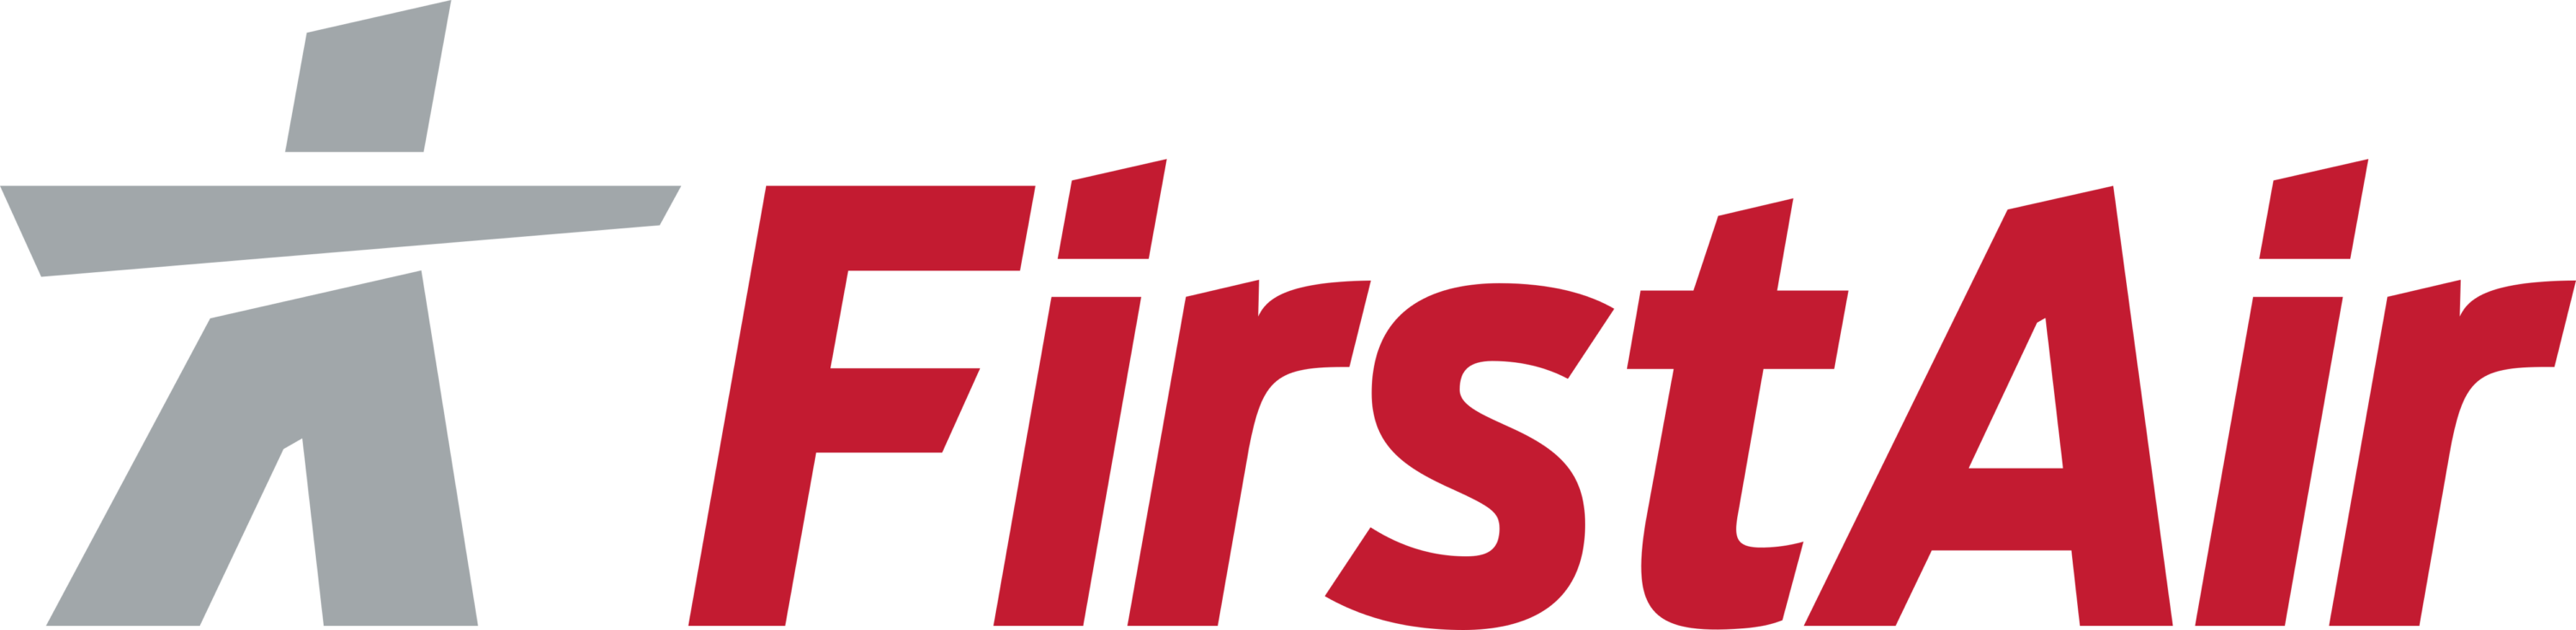 First Air Logo